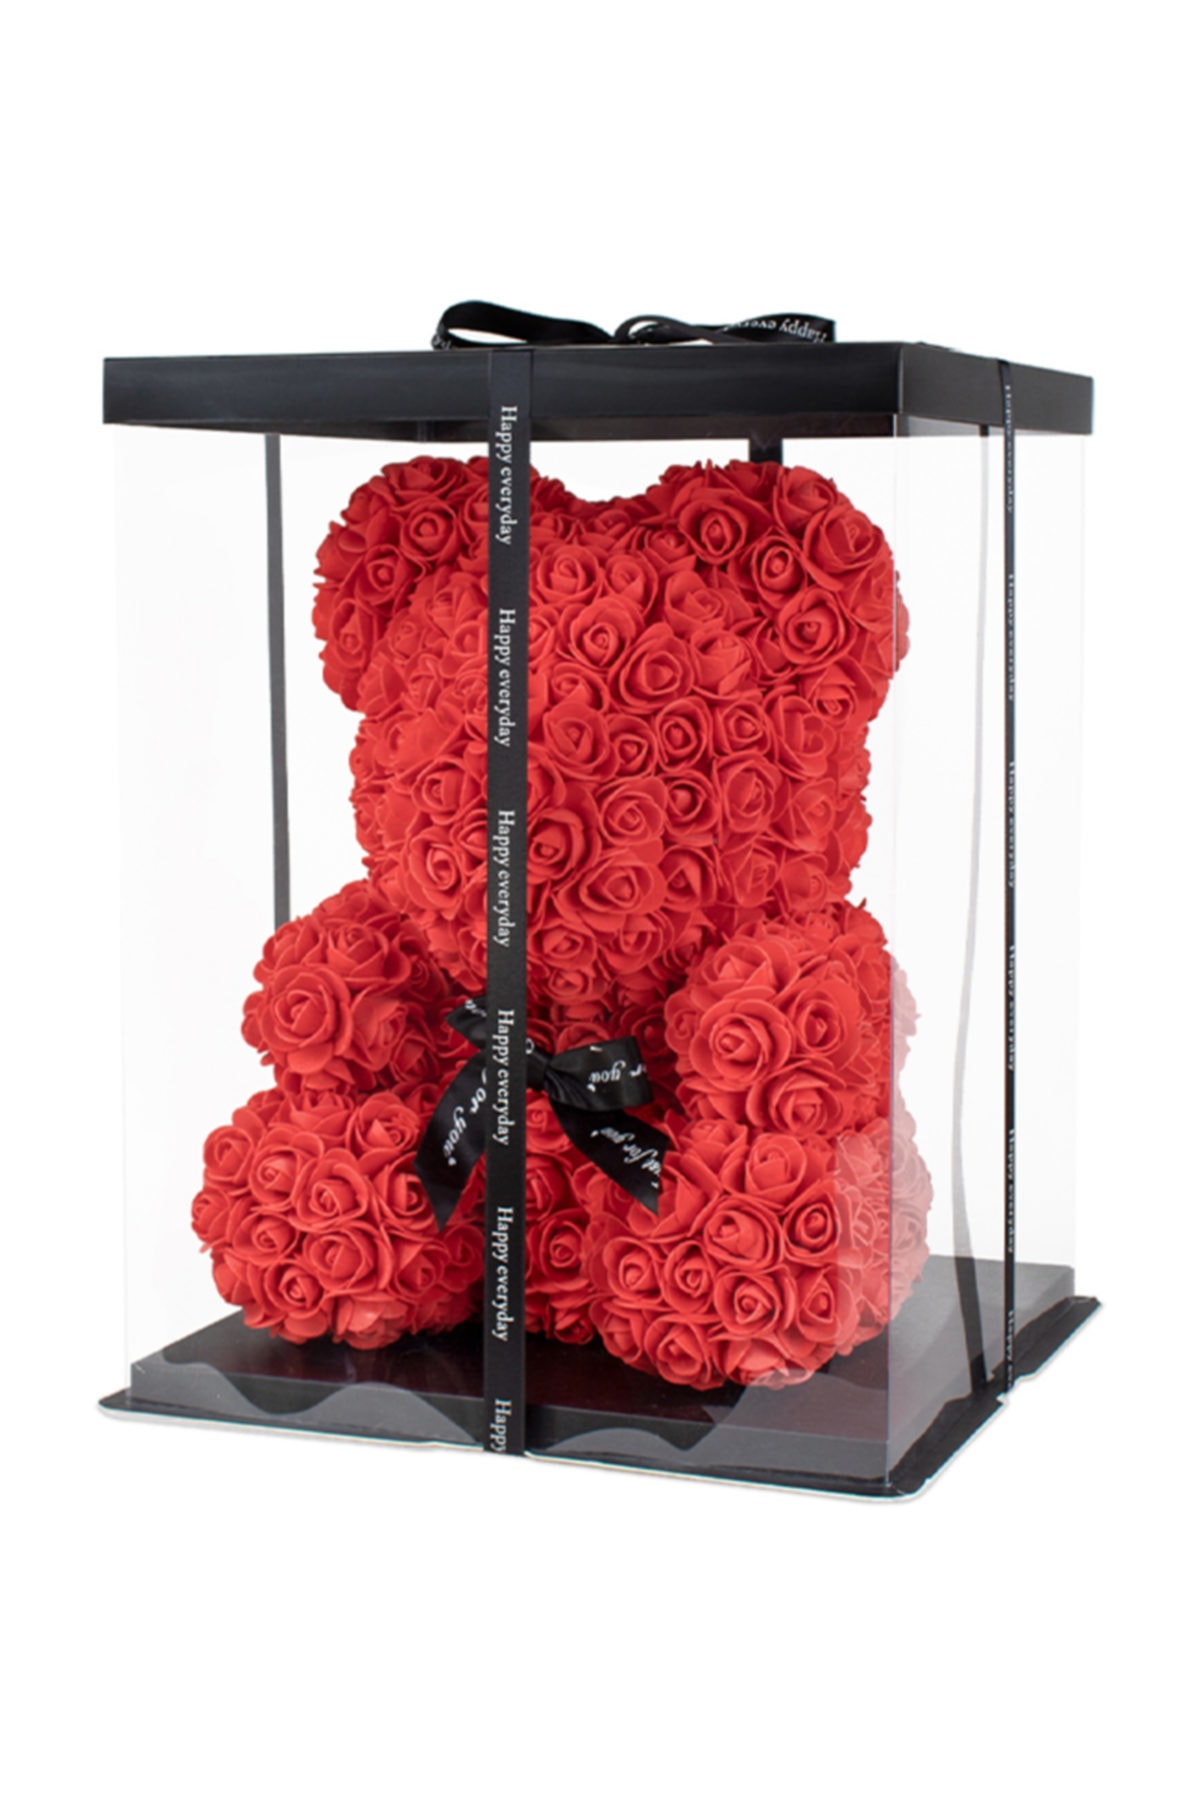 Çiçekmisin Teddy Rose Bear Güllü Ayıcık Kırmızı 34x26 cm